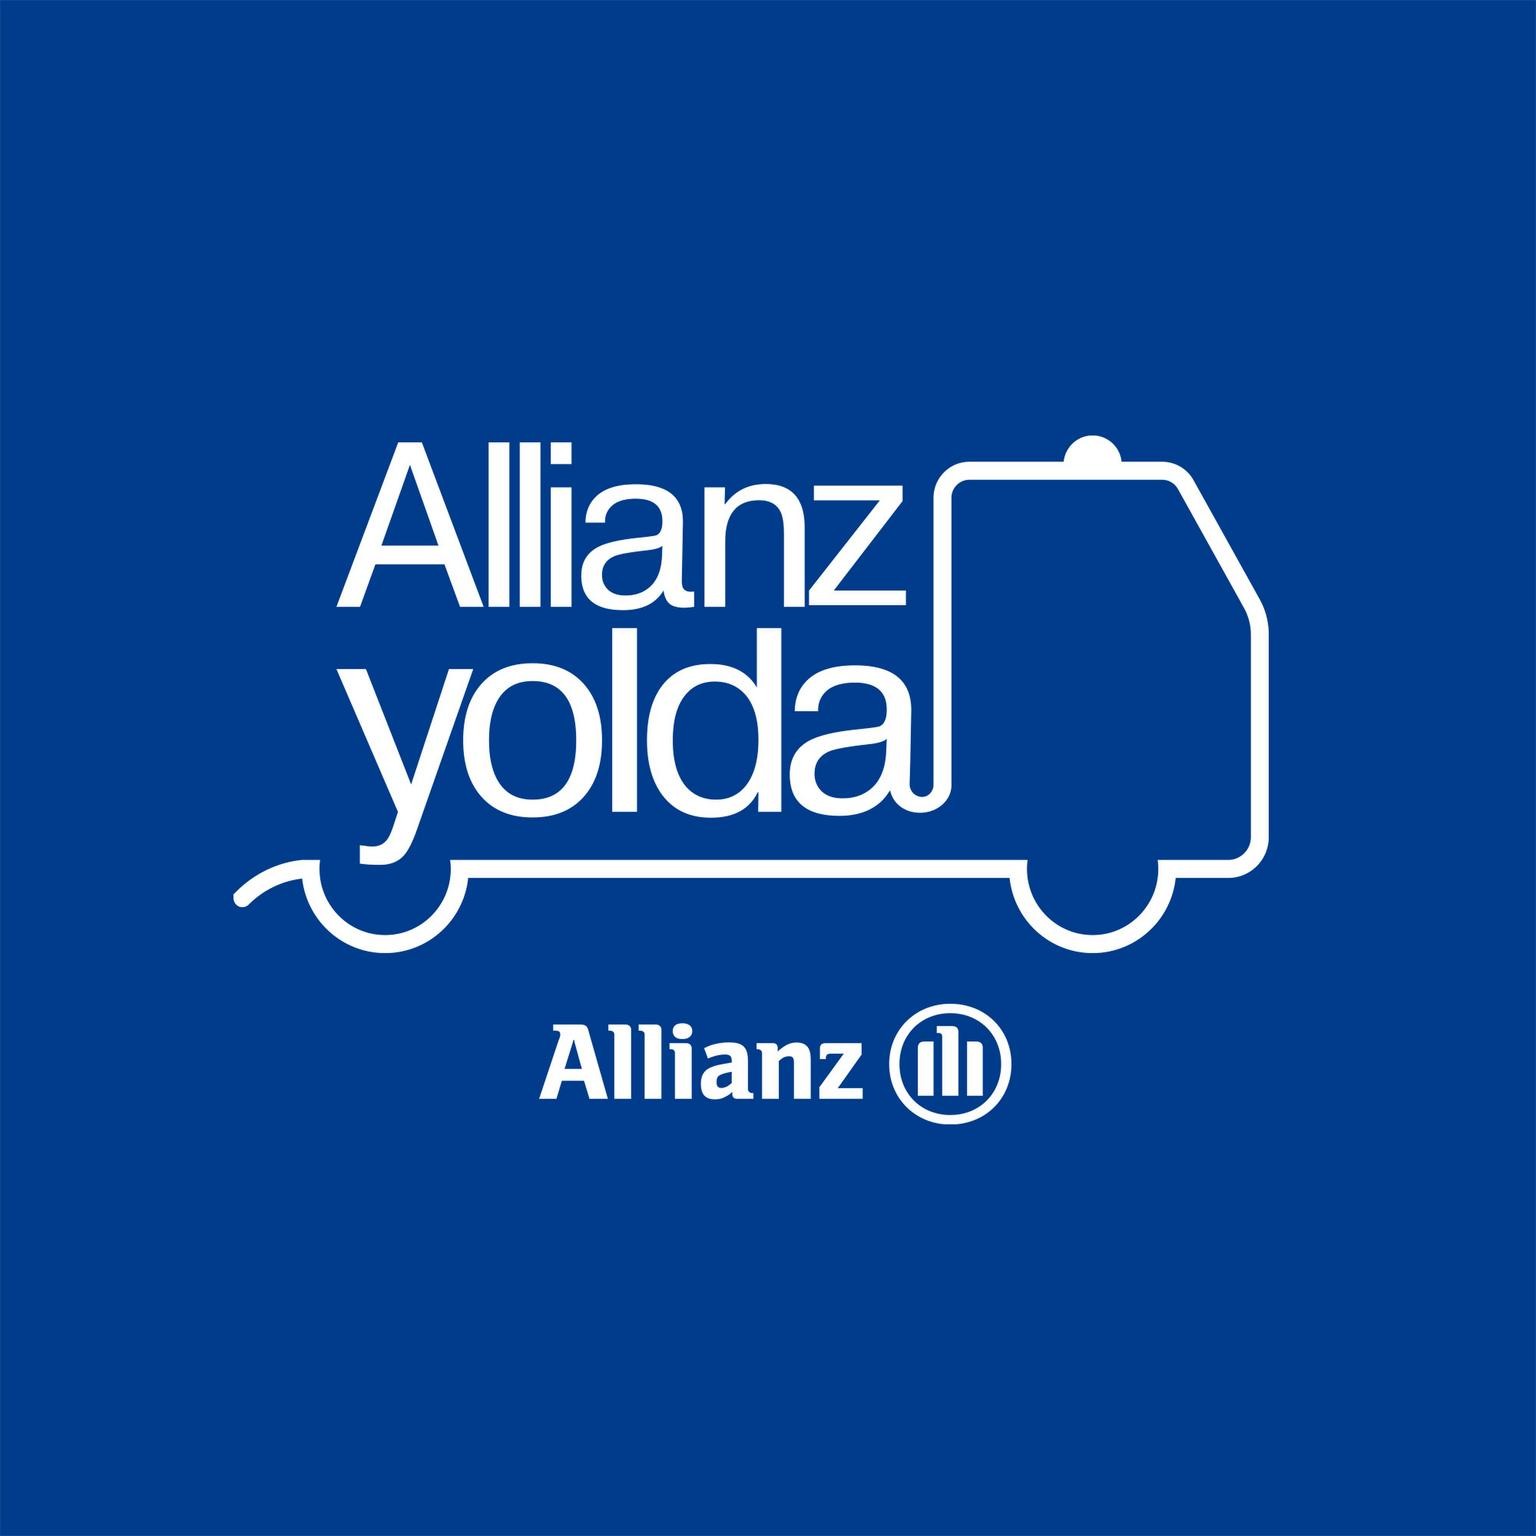 Allianz Yolda